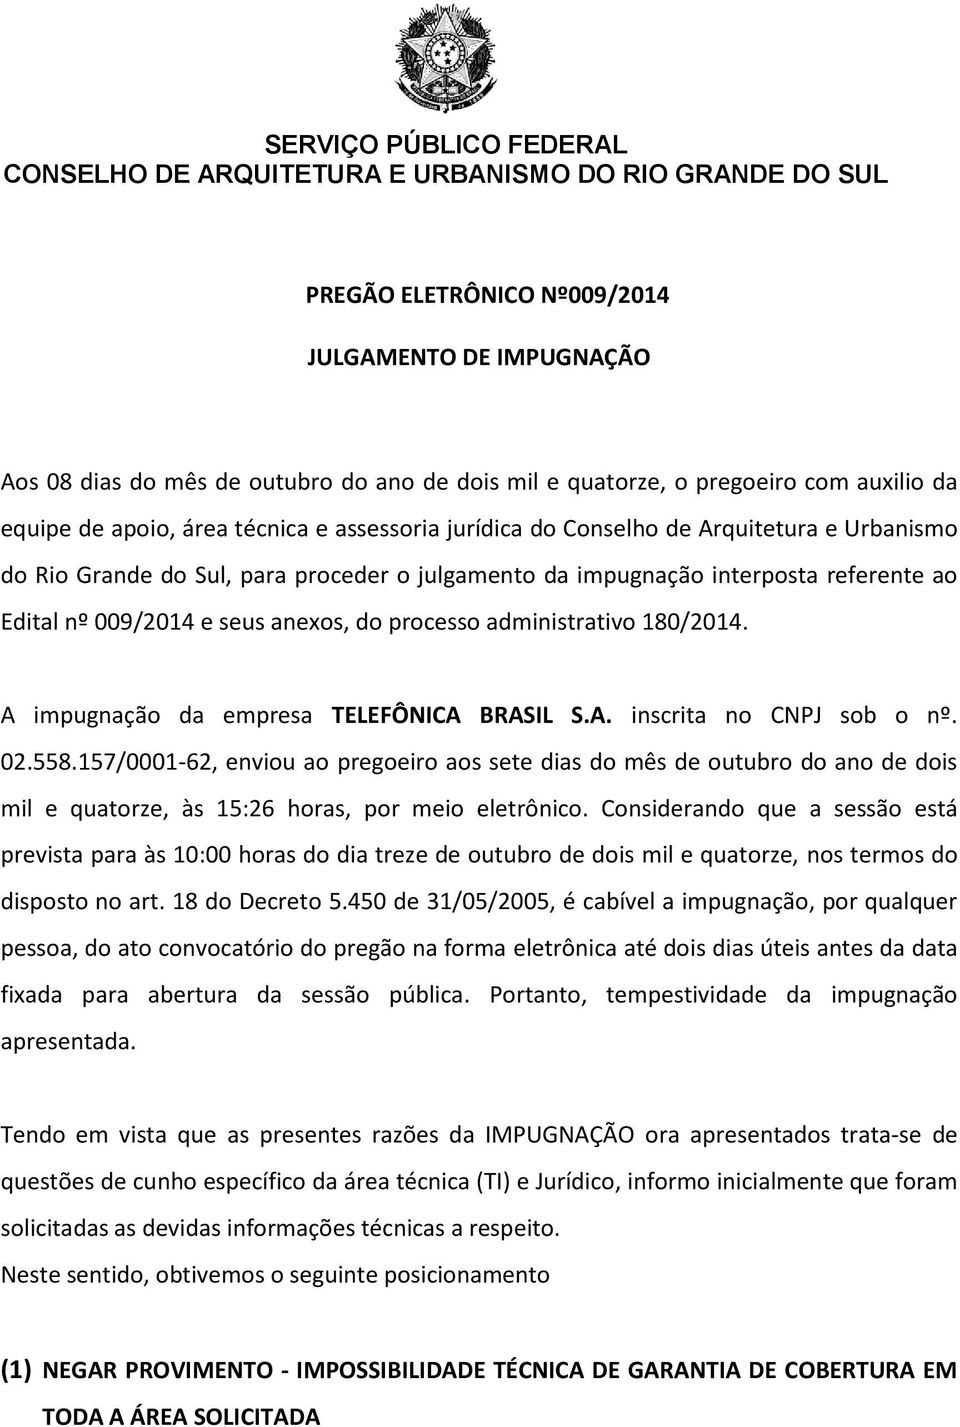 ao Edital nº 009/2014 e seus anexos, do processo administrativo 180/2014. A impugnação da empresa TELEFÔNICA BRASIL S.A. inscrita no CNPJ sob o nº. 02.558.